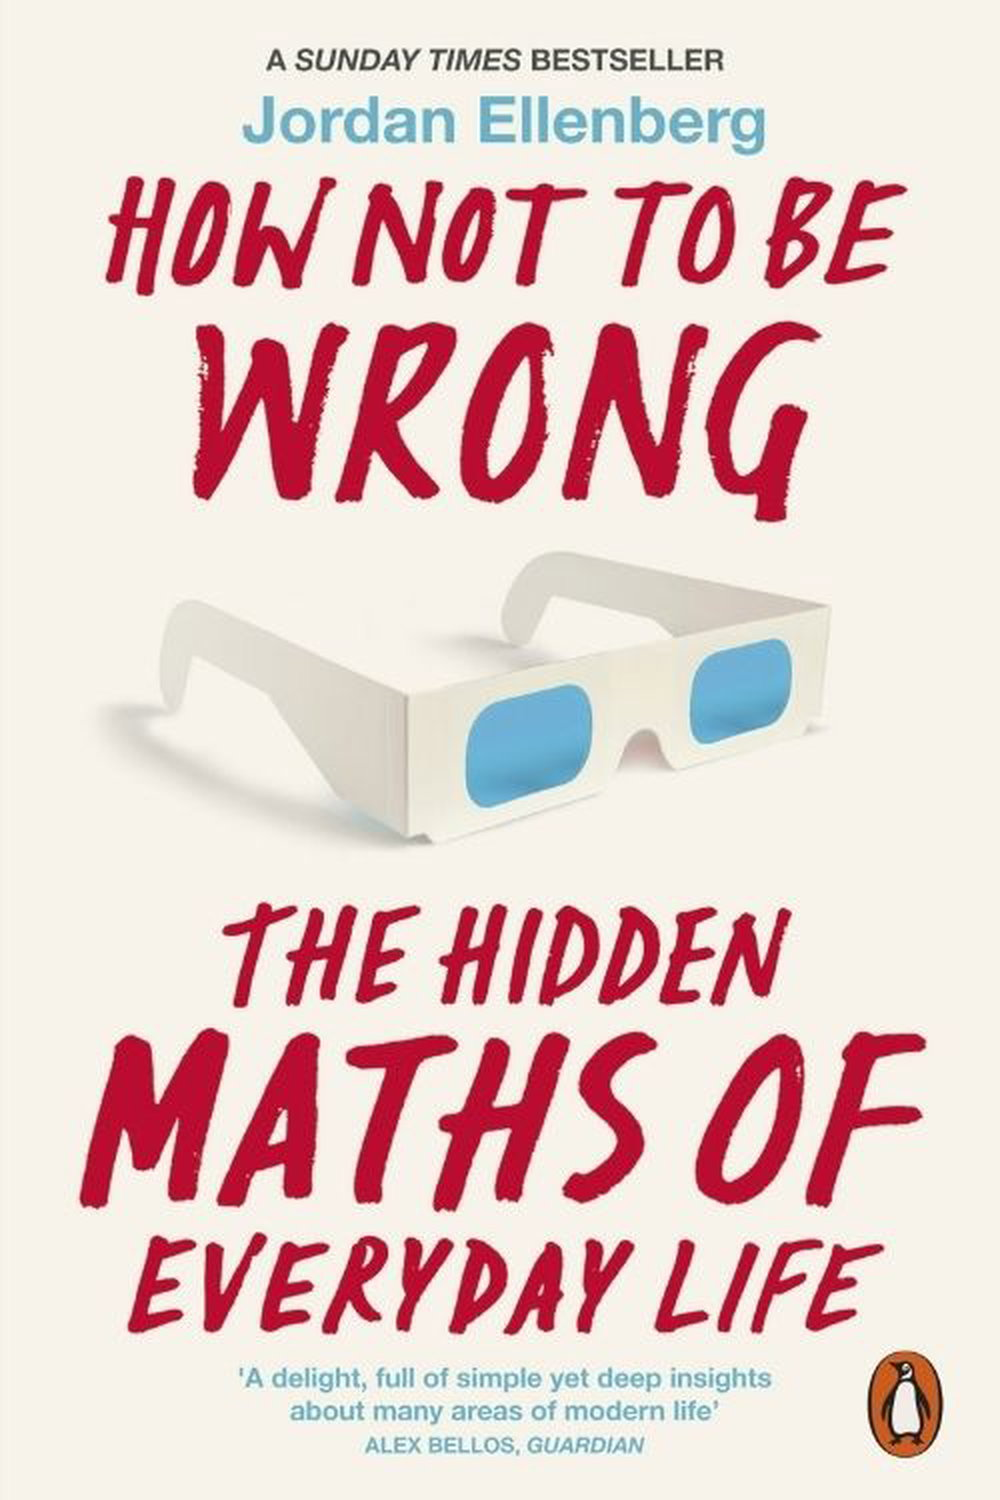 गणित के प्यार में पड़ने के लिए इन किताबों को पढ़ें - द हिडन मैथ्स ऑफ एवरीडे लाइफ